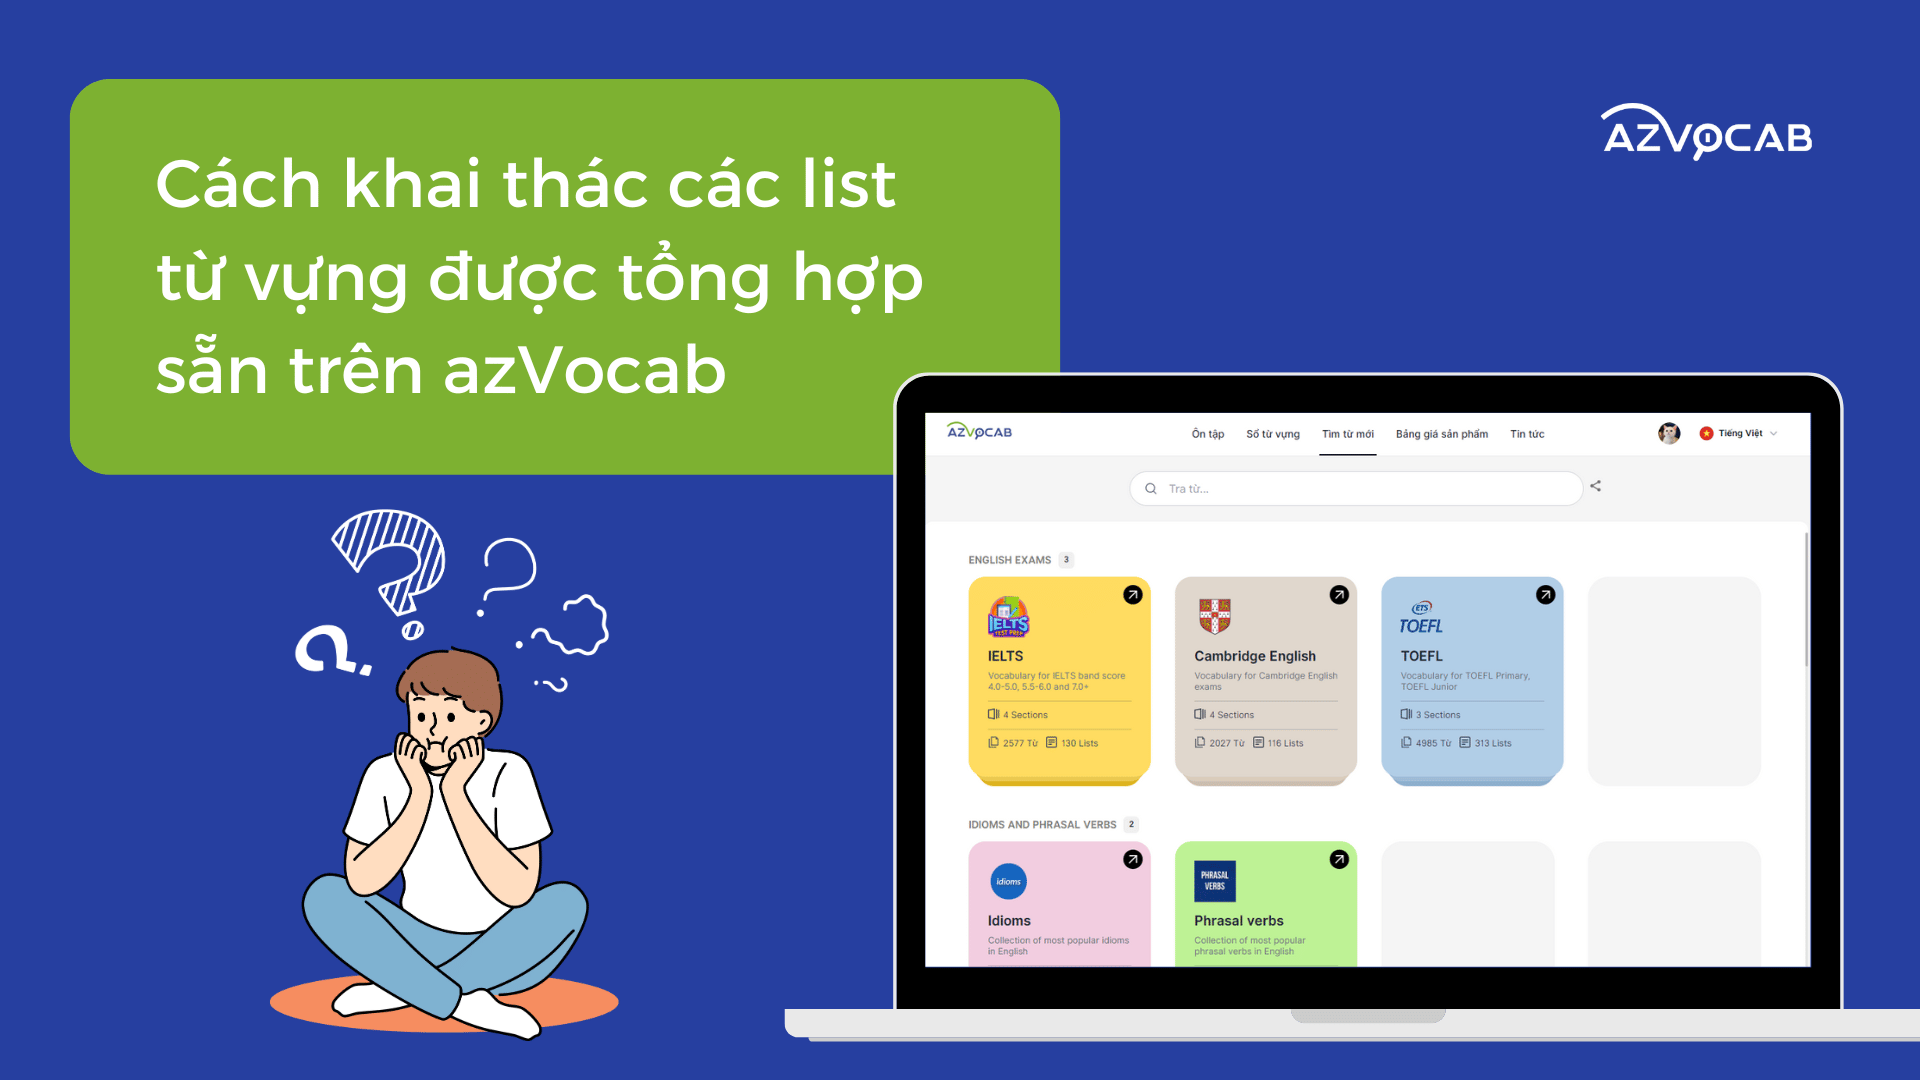 Cách khai thác các list từ vựng được tổng hợp sẵn trên azVocab